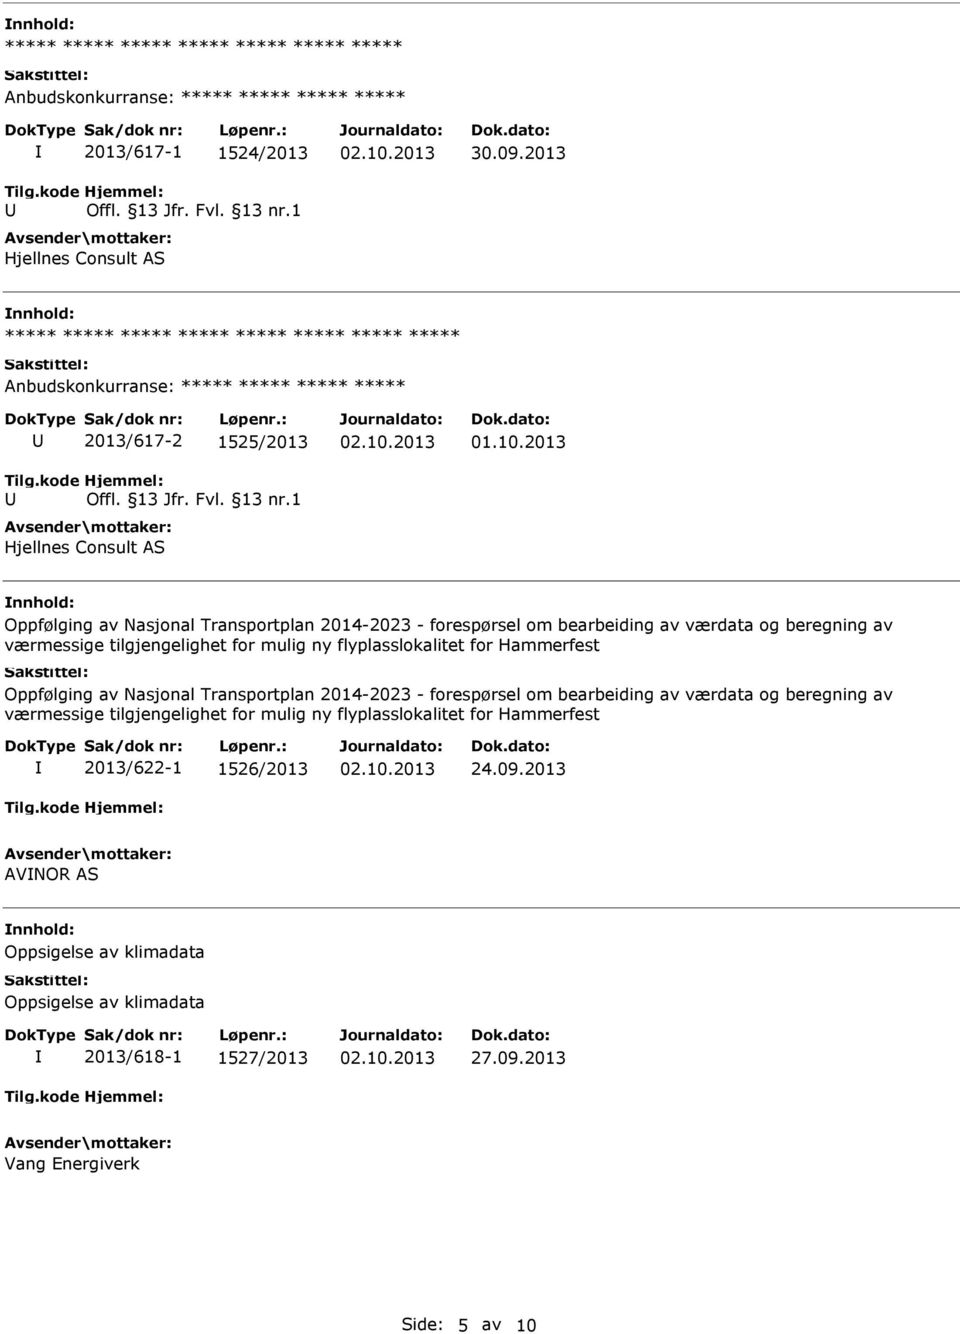 værmessige tilgjengelighet for mulig ny flyplasslokalitet for Hammerfest Oppfølging av Nasjonal Transportplan 2014-2023 - forespørsel om bearbeiding av værdata og beregning av værmessige